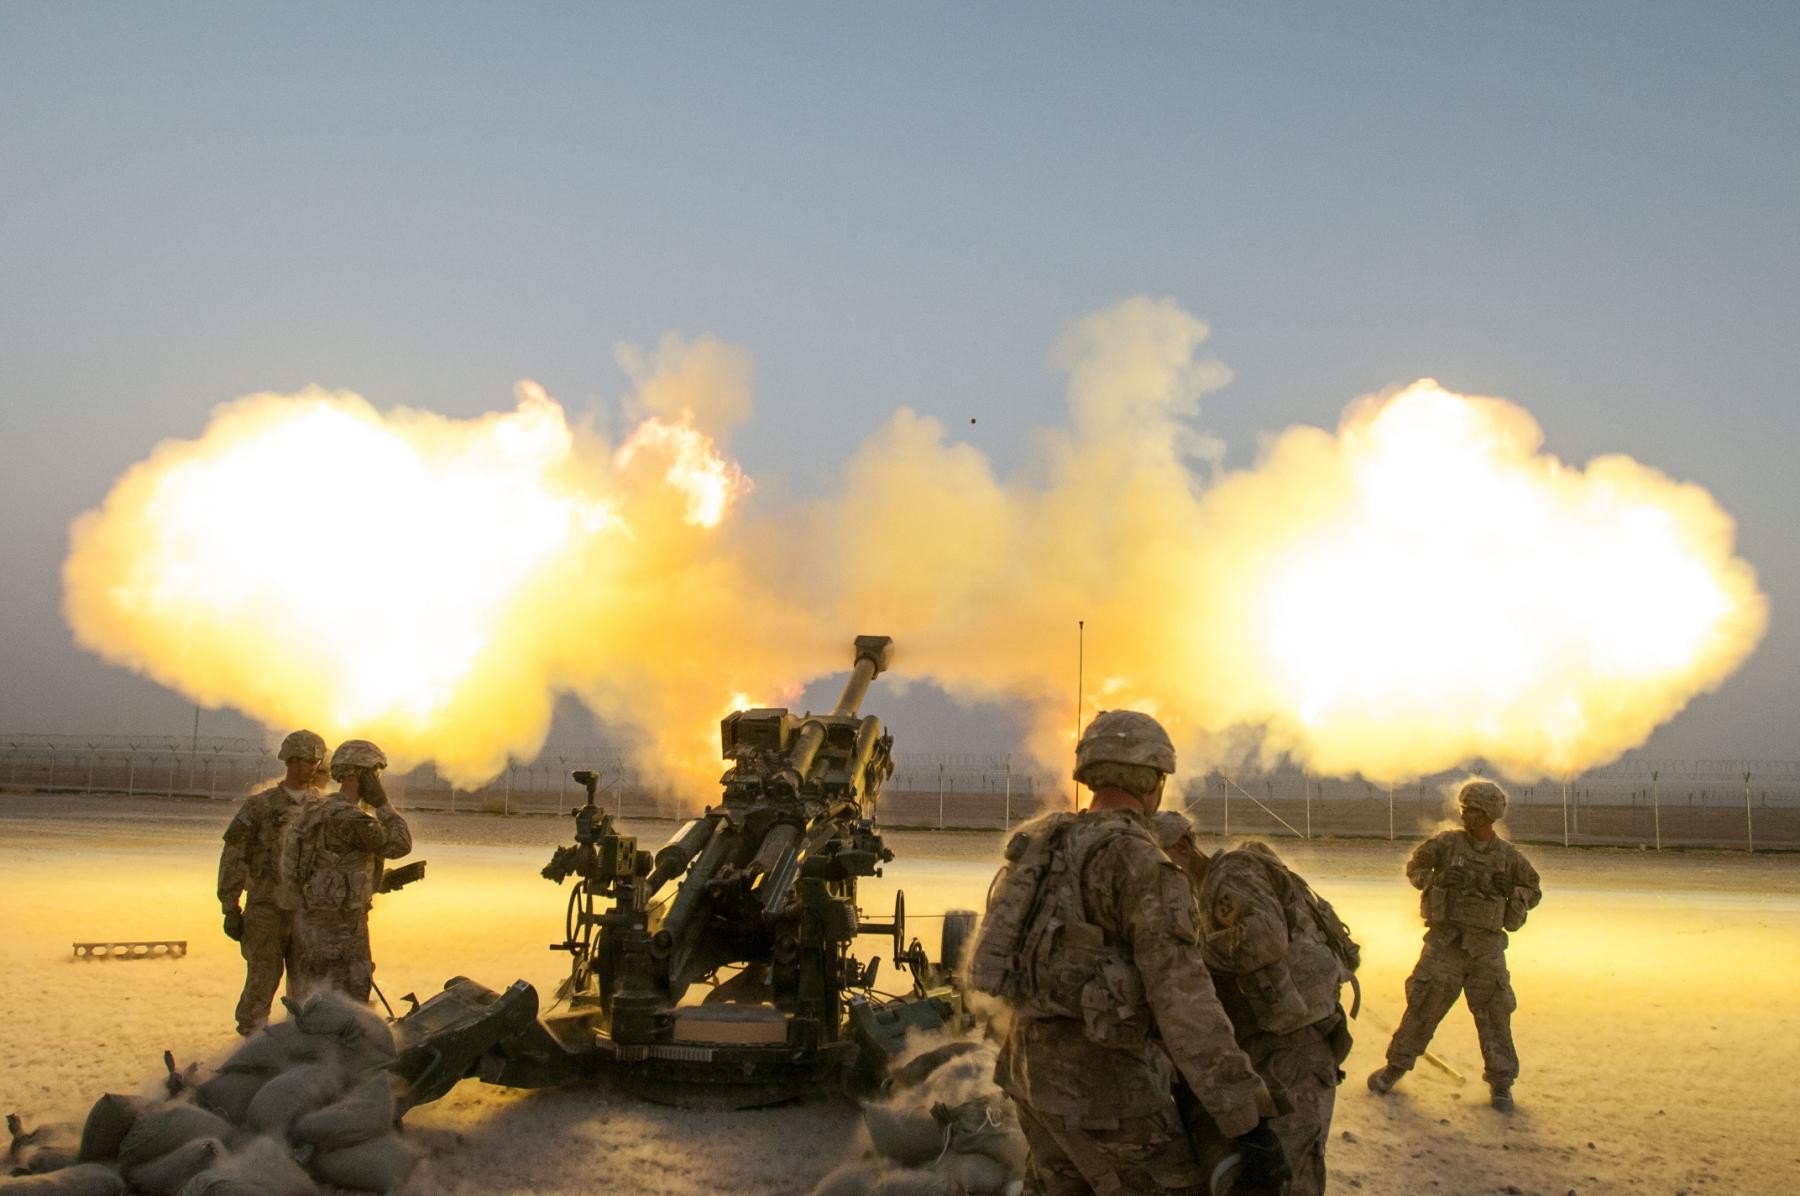 U.S Military • Coordinate Artillery Support Fire • from Kandahar Airfield • Kandahar Afghanistan